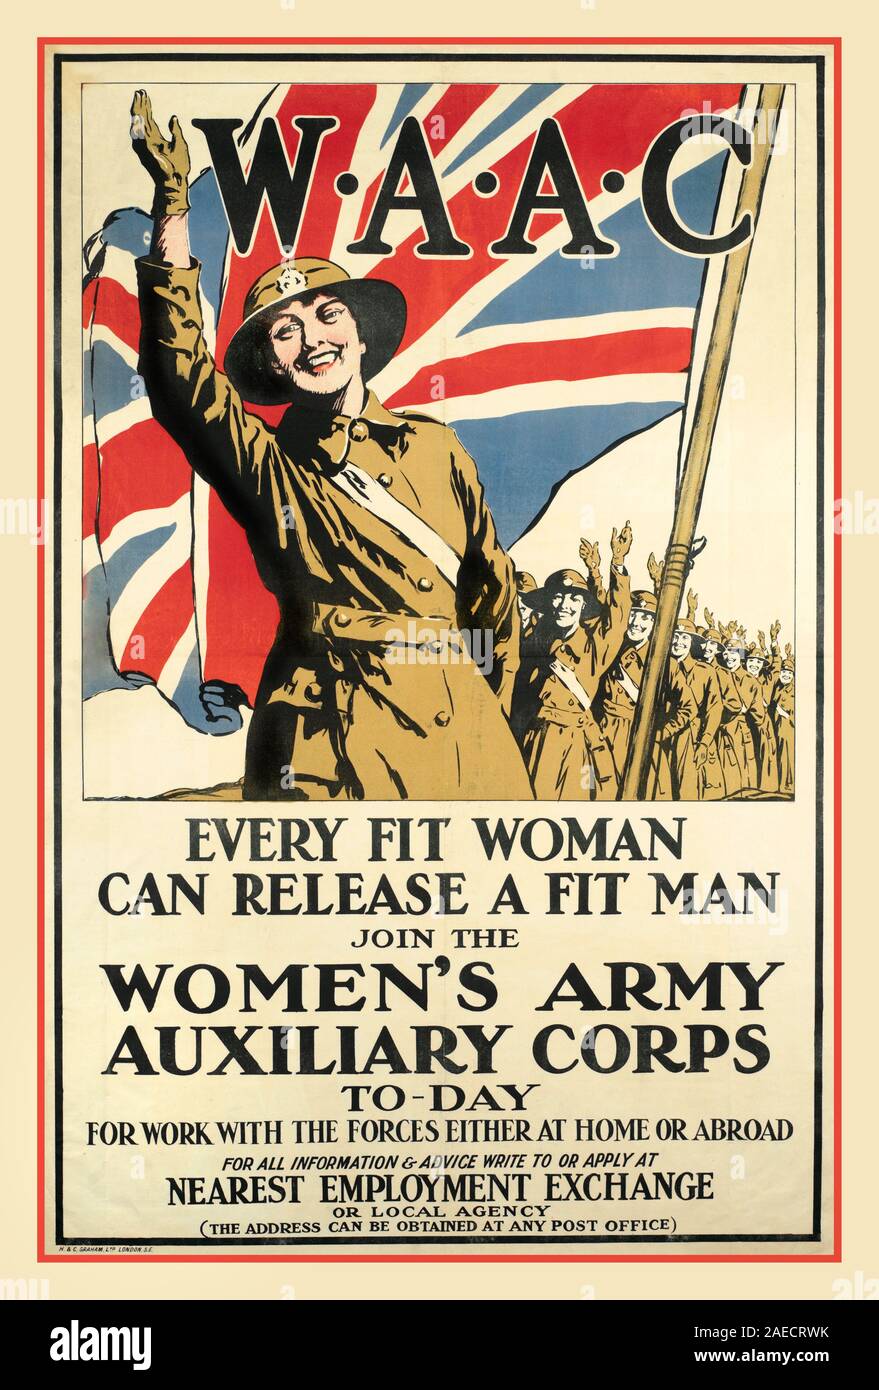 WAAC WW1 Jahrgang 1915 Weltkrieg 1 Propaganda Frau weibliche Armee Rekrutierung Poster WAAC - Jedes passende Frau kann einem Menschen. Release Women's Army Auxiliary Corps. (Thames & Hudson) Ersten Weltkrieg Großbritannien Großbritannien Stockfoto